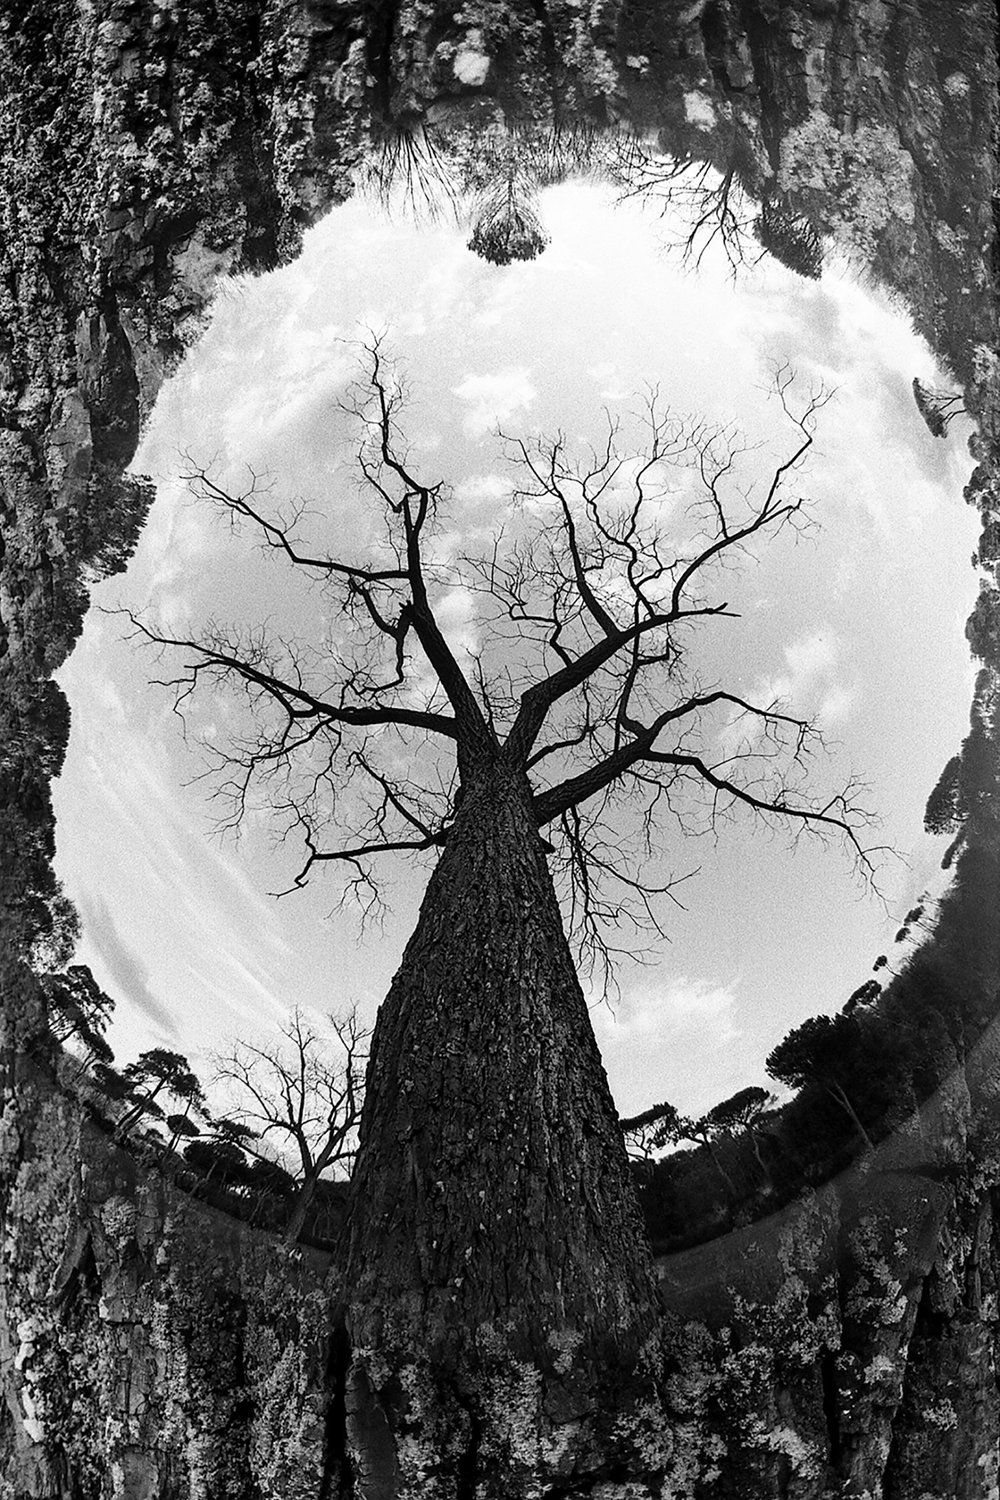 "Trees don't need eyes" by Homero Prodan